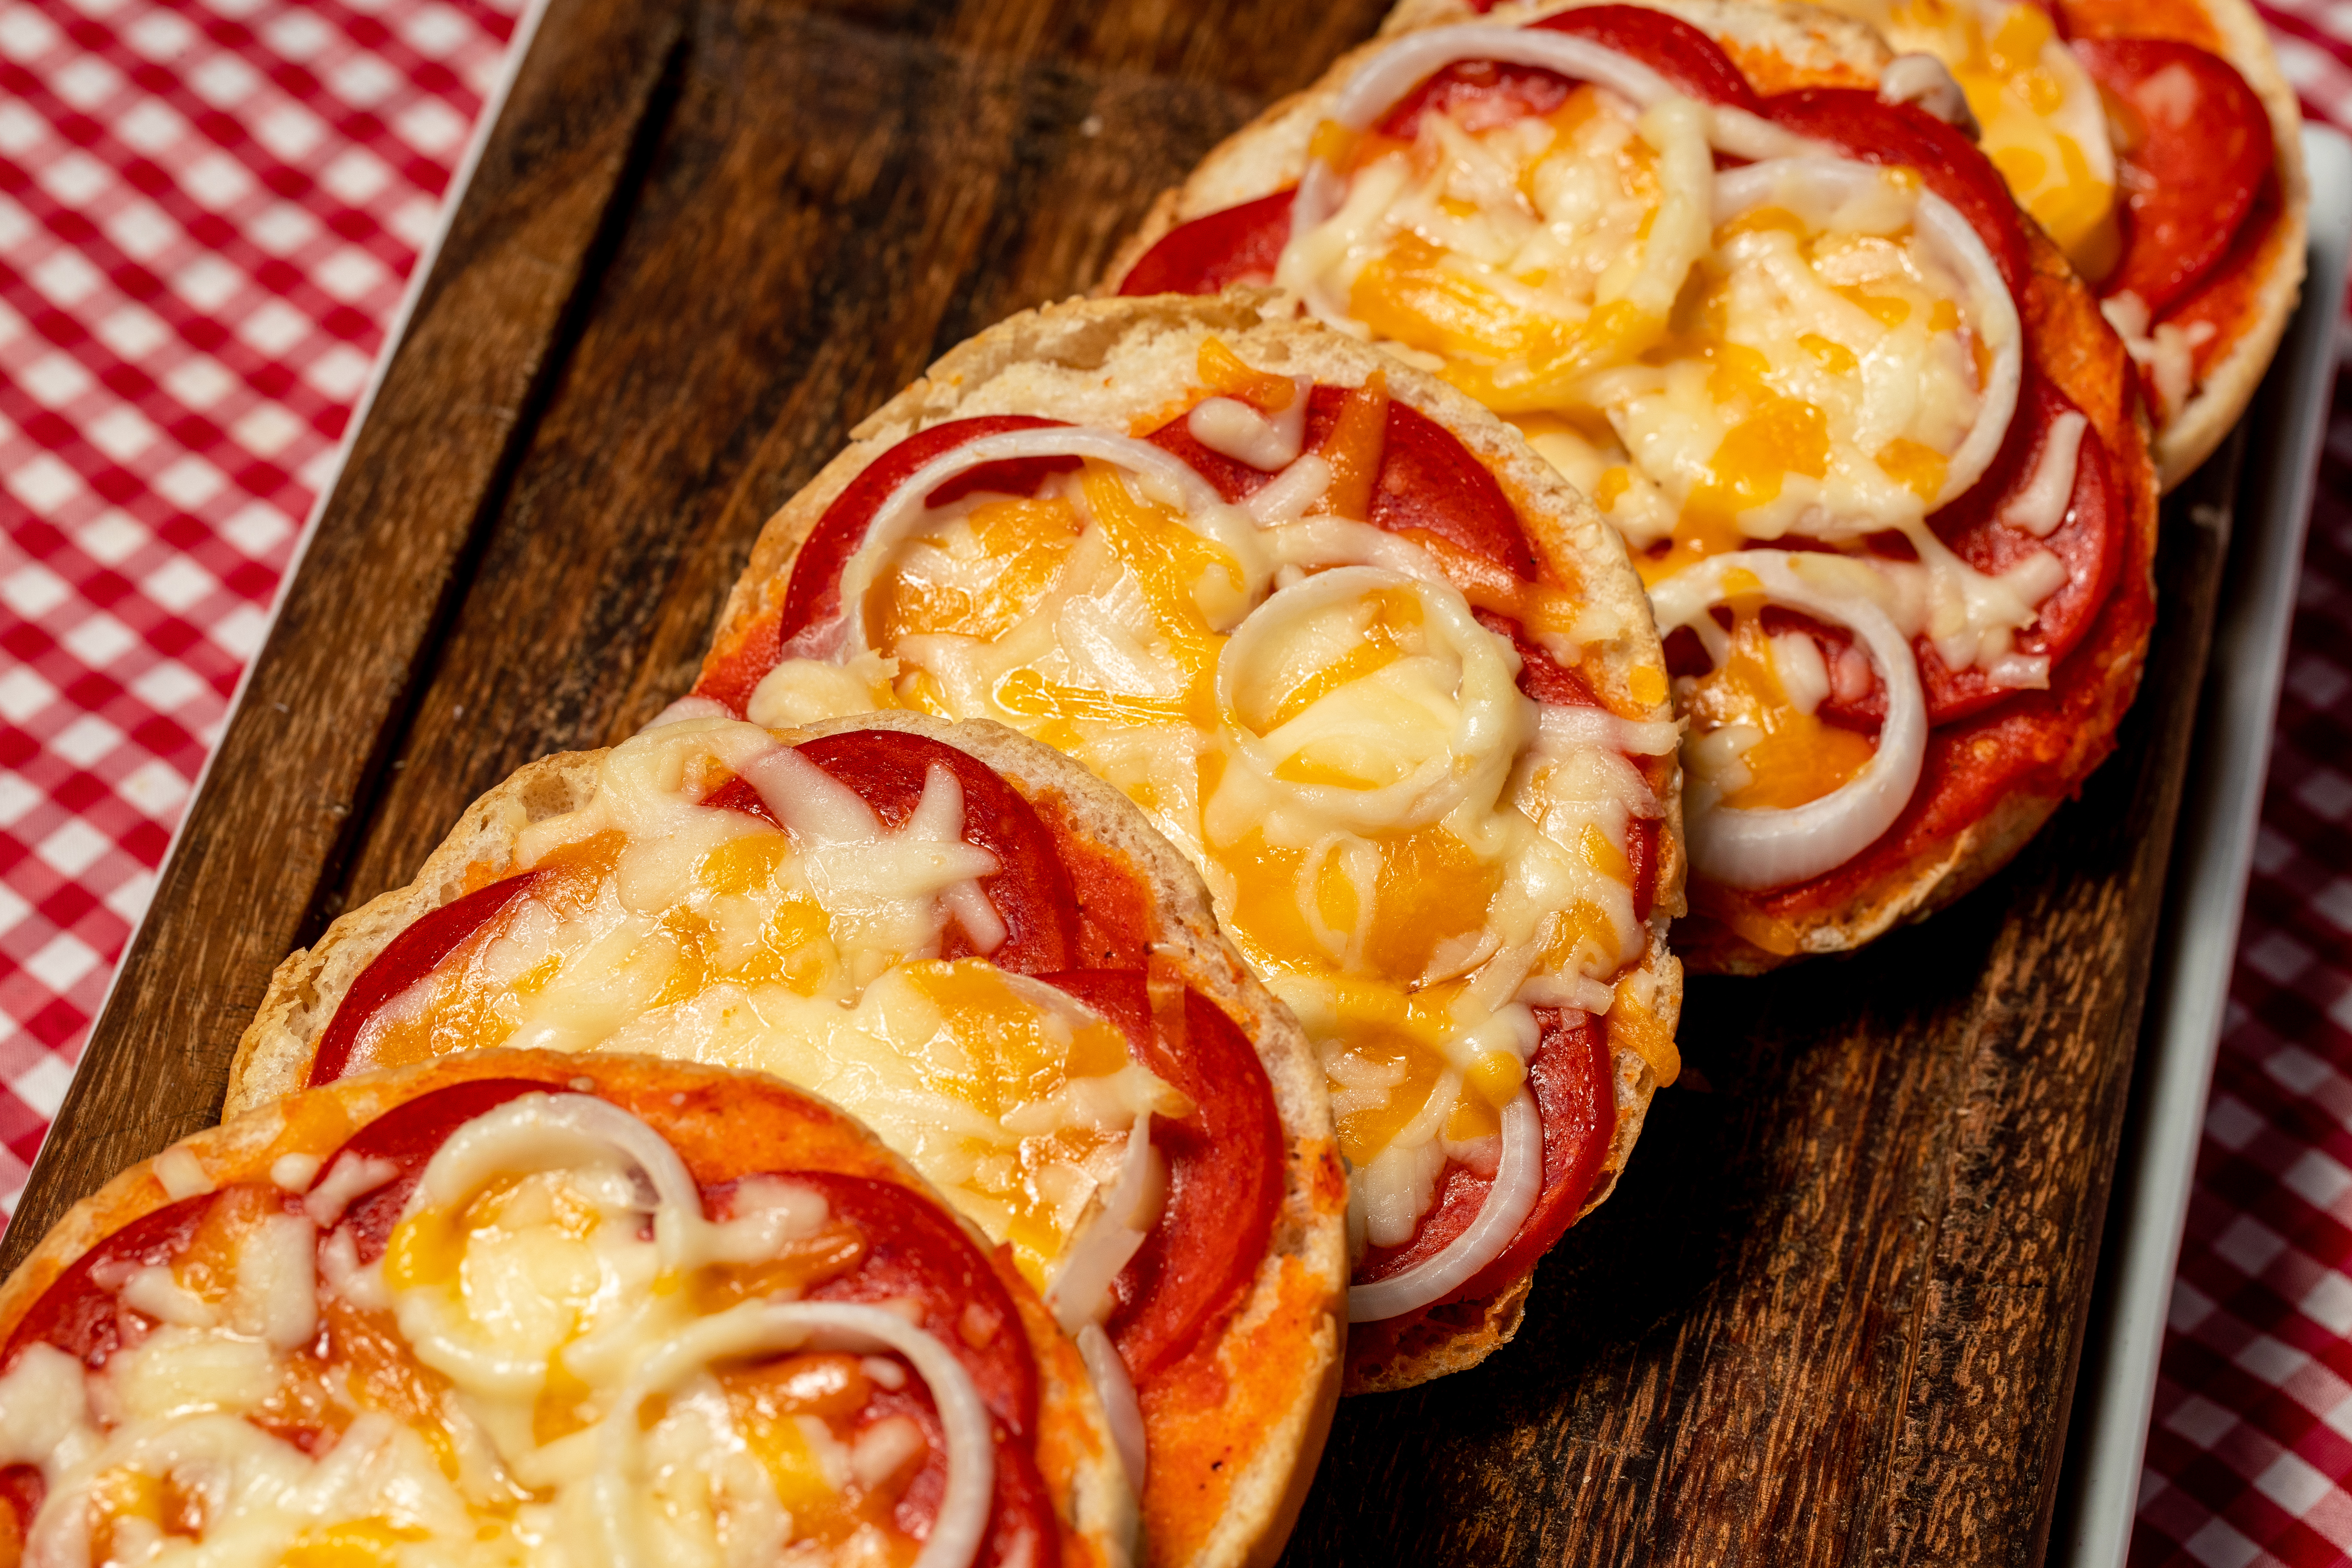 Pizzas rápidas y dos recetas más son platillos recomendados para disfrutar del Super Bowl. (Foto Prensa Libre: Juan Diego González)